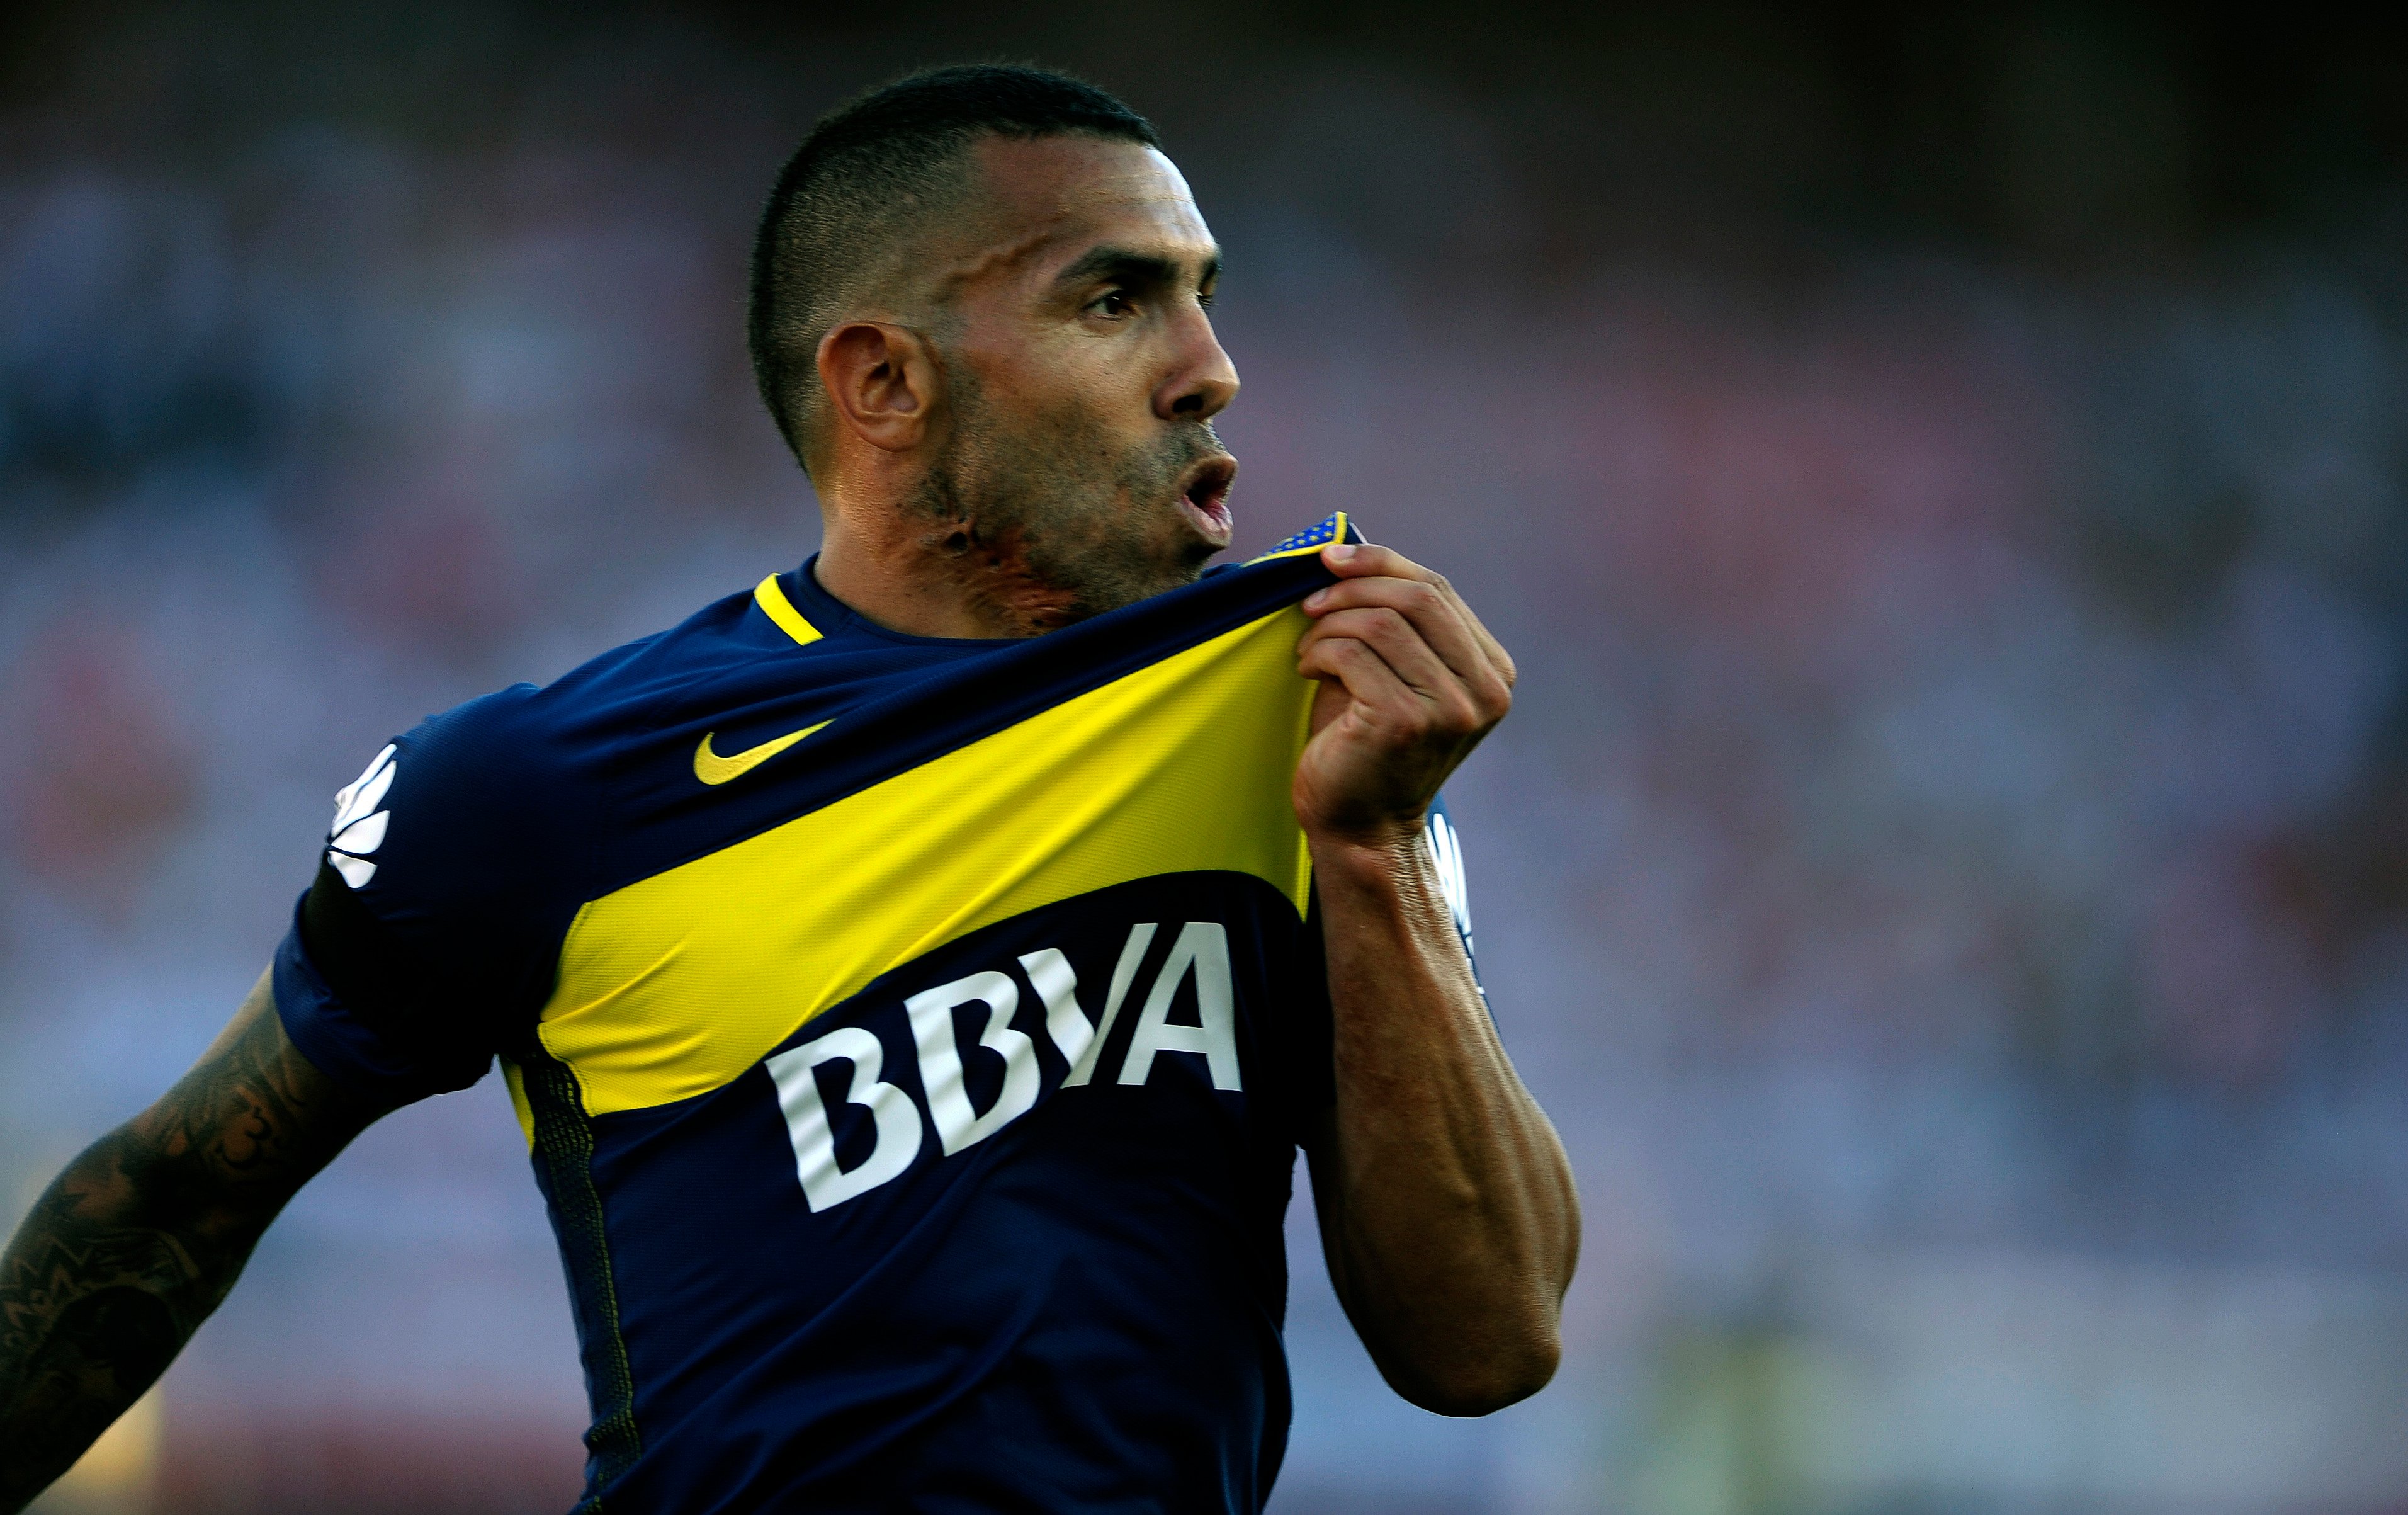 MORNO - De acordo com a imprensa argentina, a diretoria do Olimpia foi até o representante de Tevez para entender a oferta do Boca Juniors e apresentar a sua proposta para adquirir o jogador.